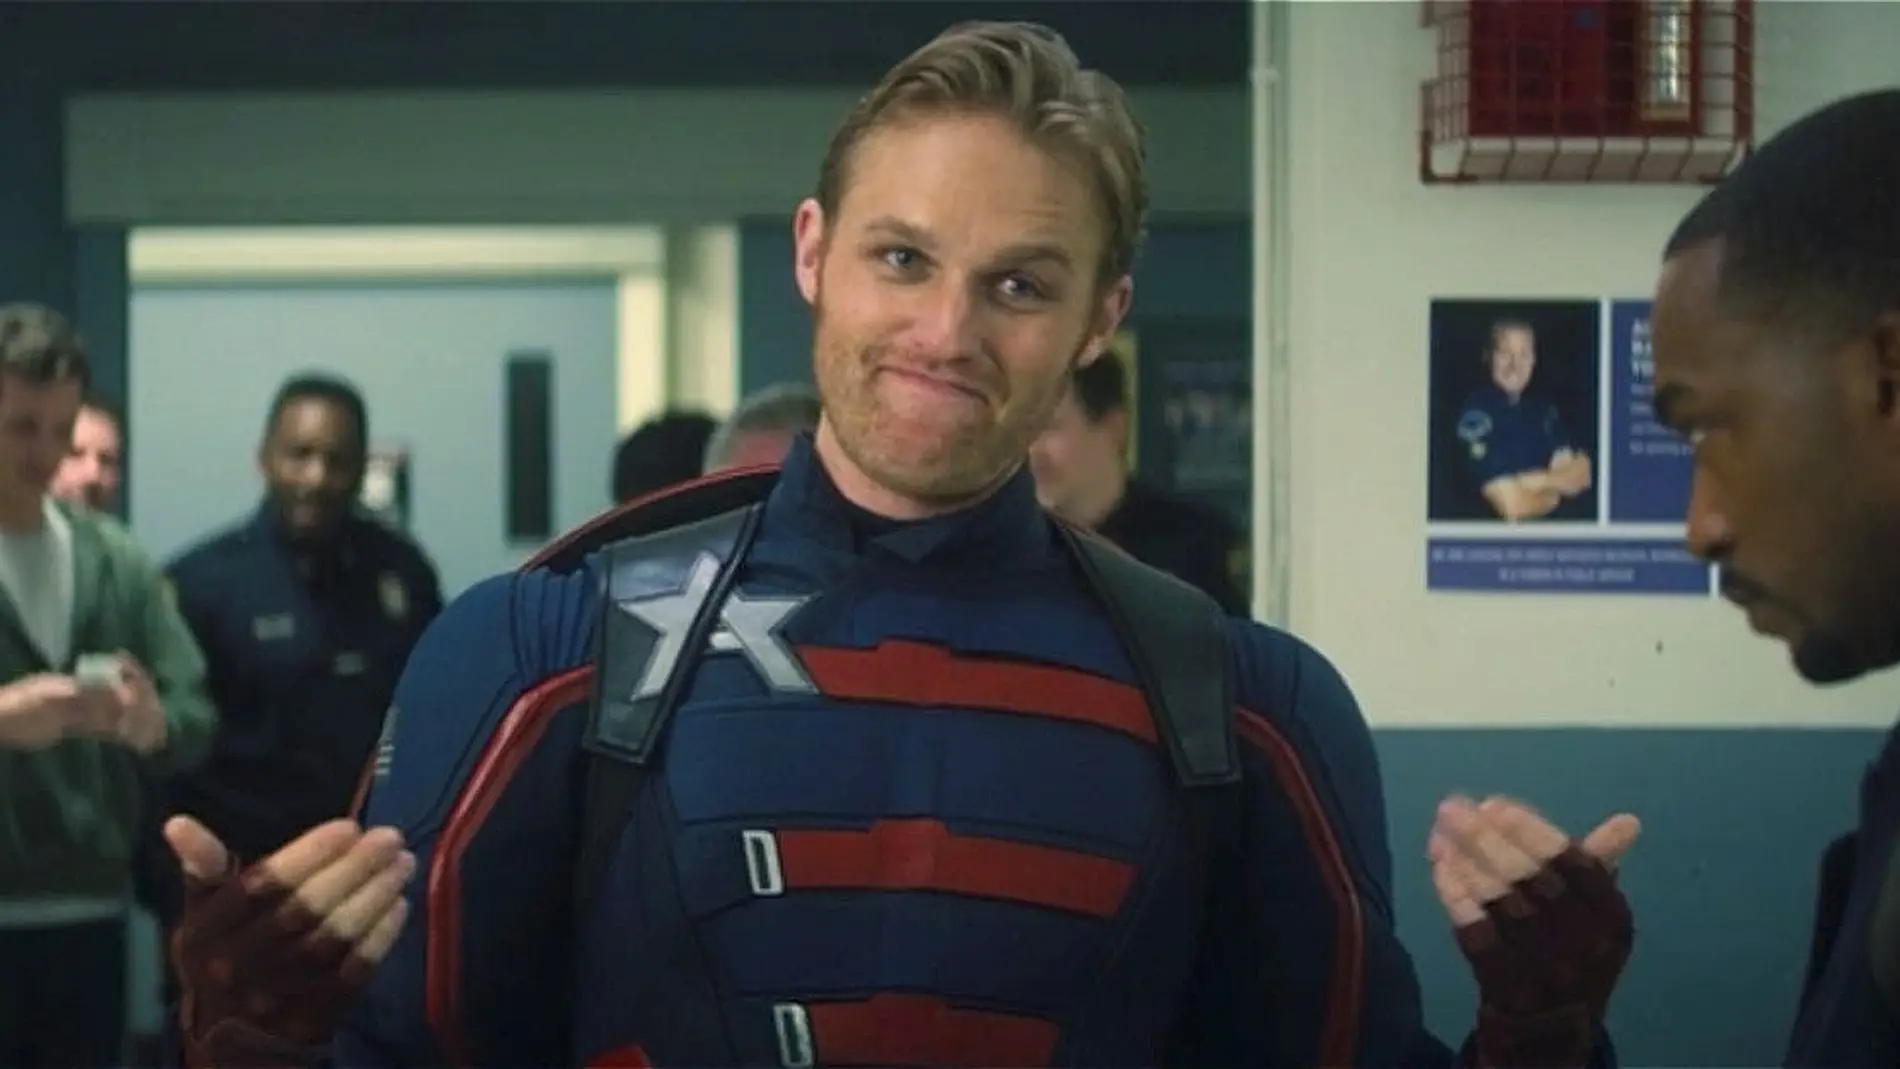 Wyatt Russell como Capitán América en 'Falcon y el Soldado de Invienro'